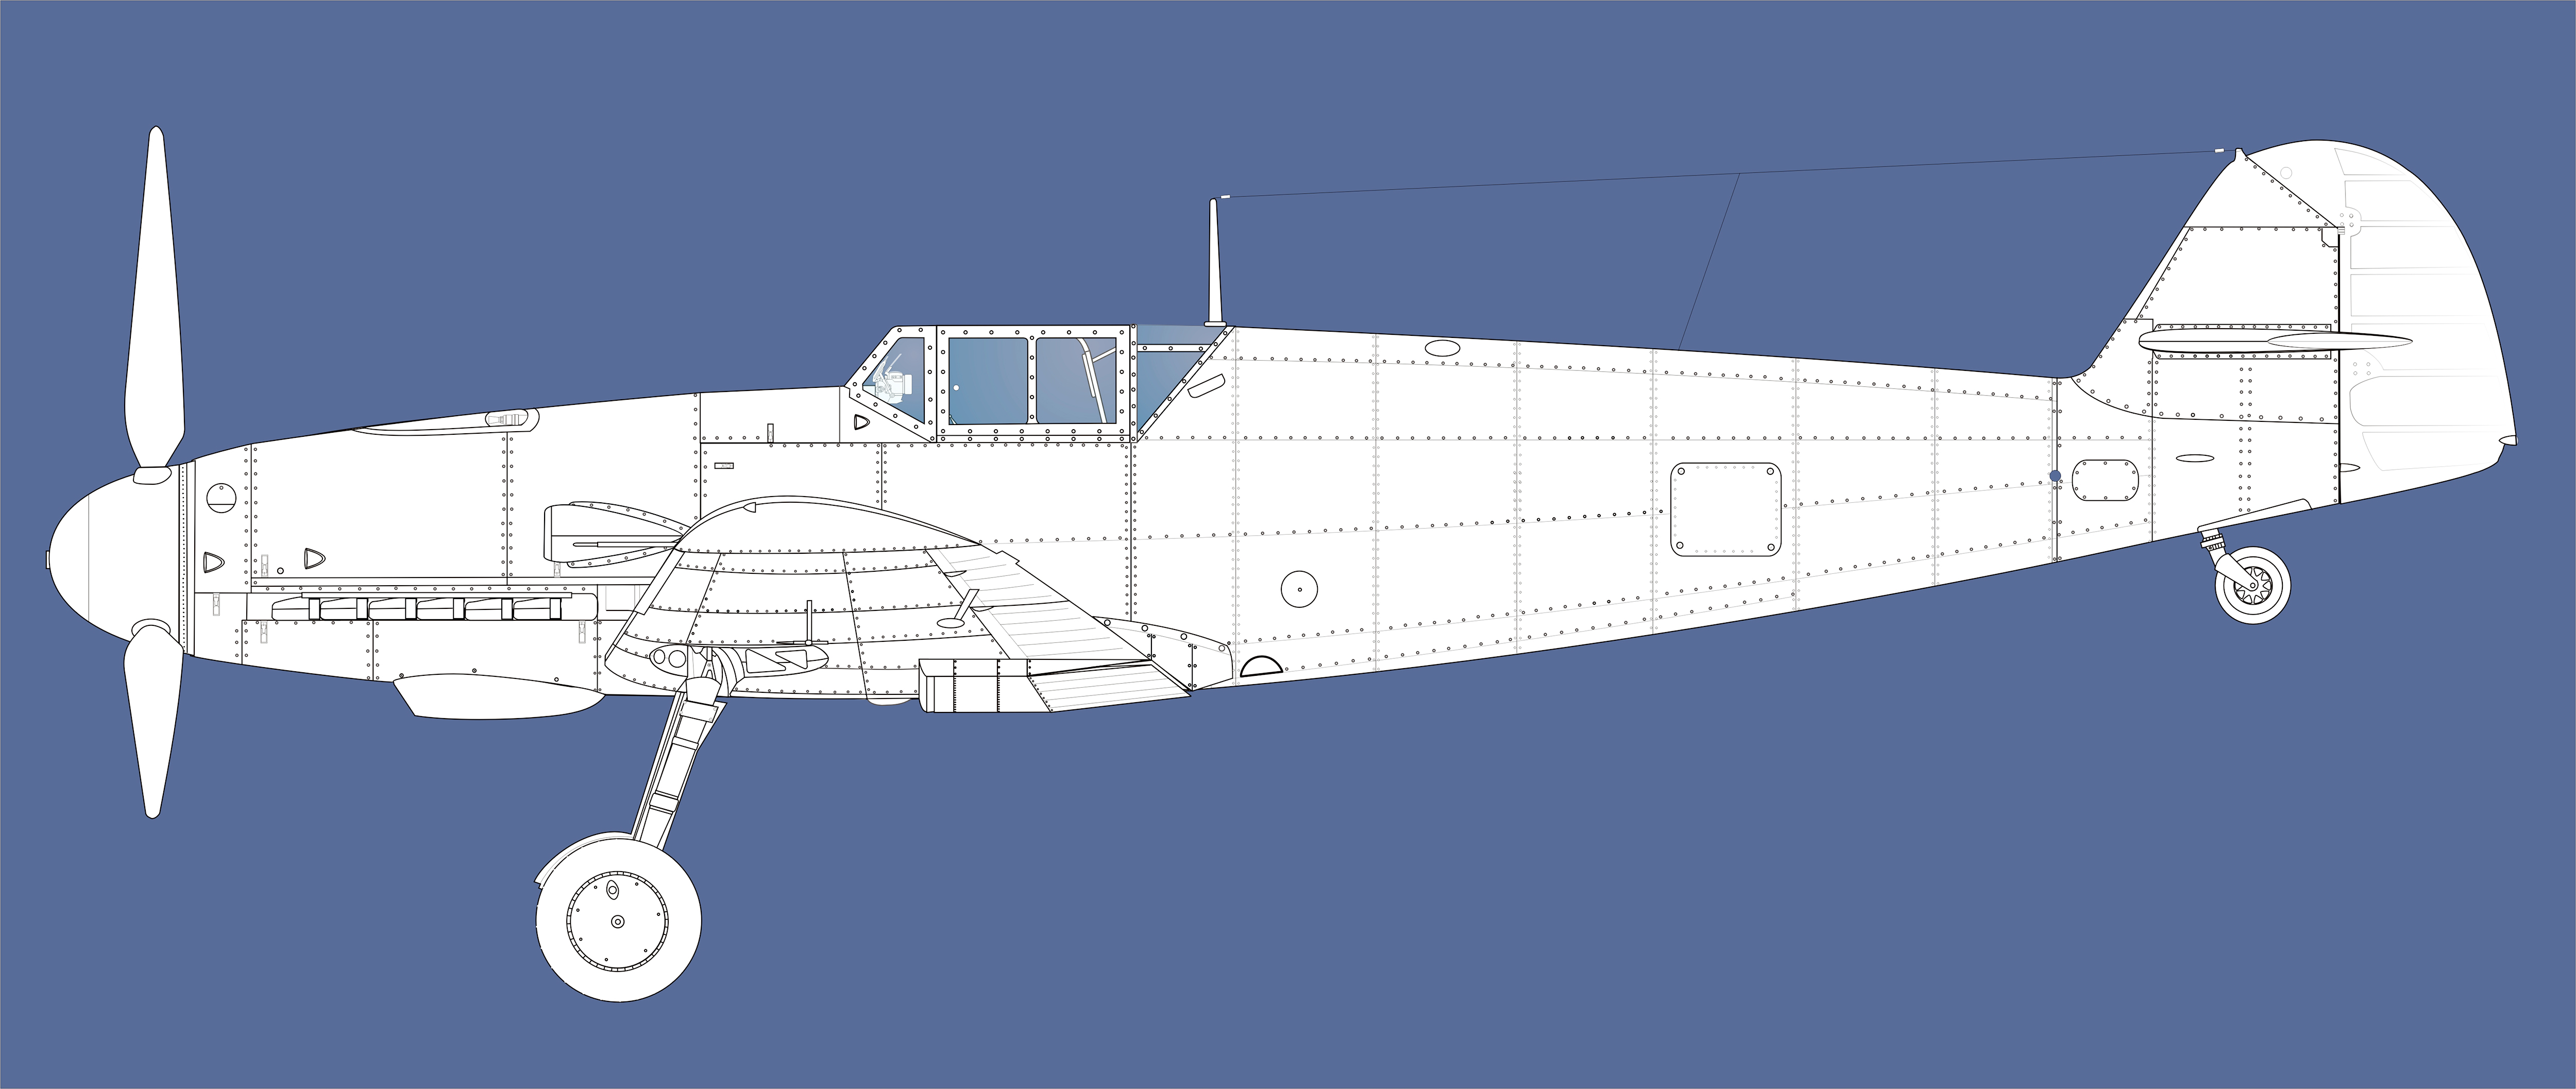 Artwork Messerschmitt Line drawing Bf 109G2 Large Blue print 01